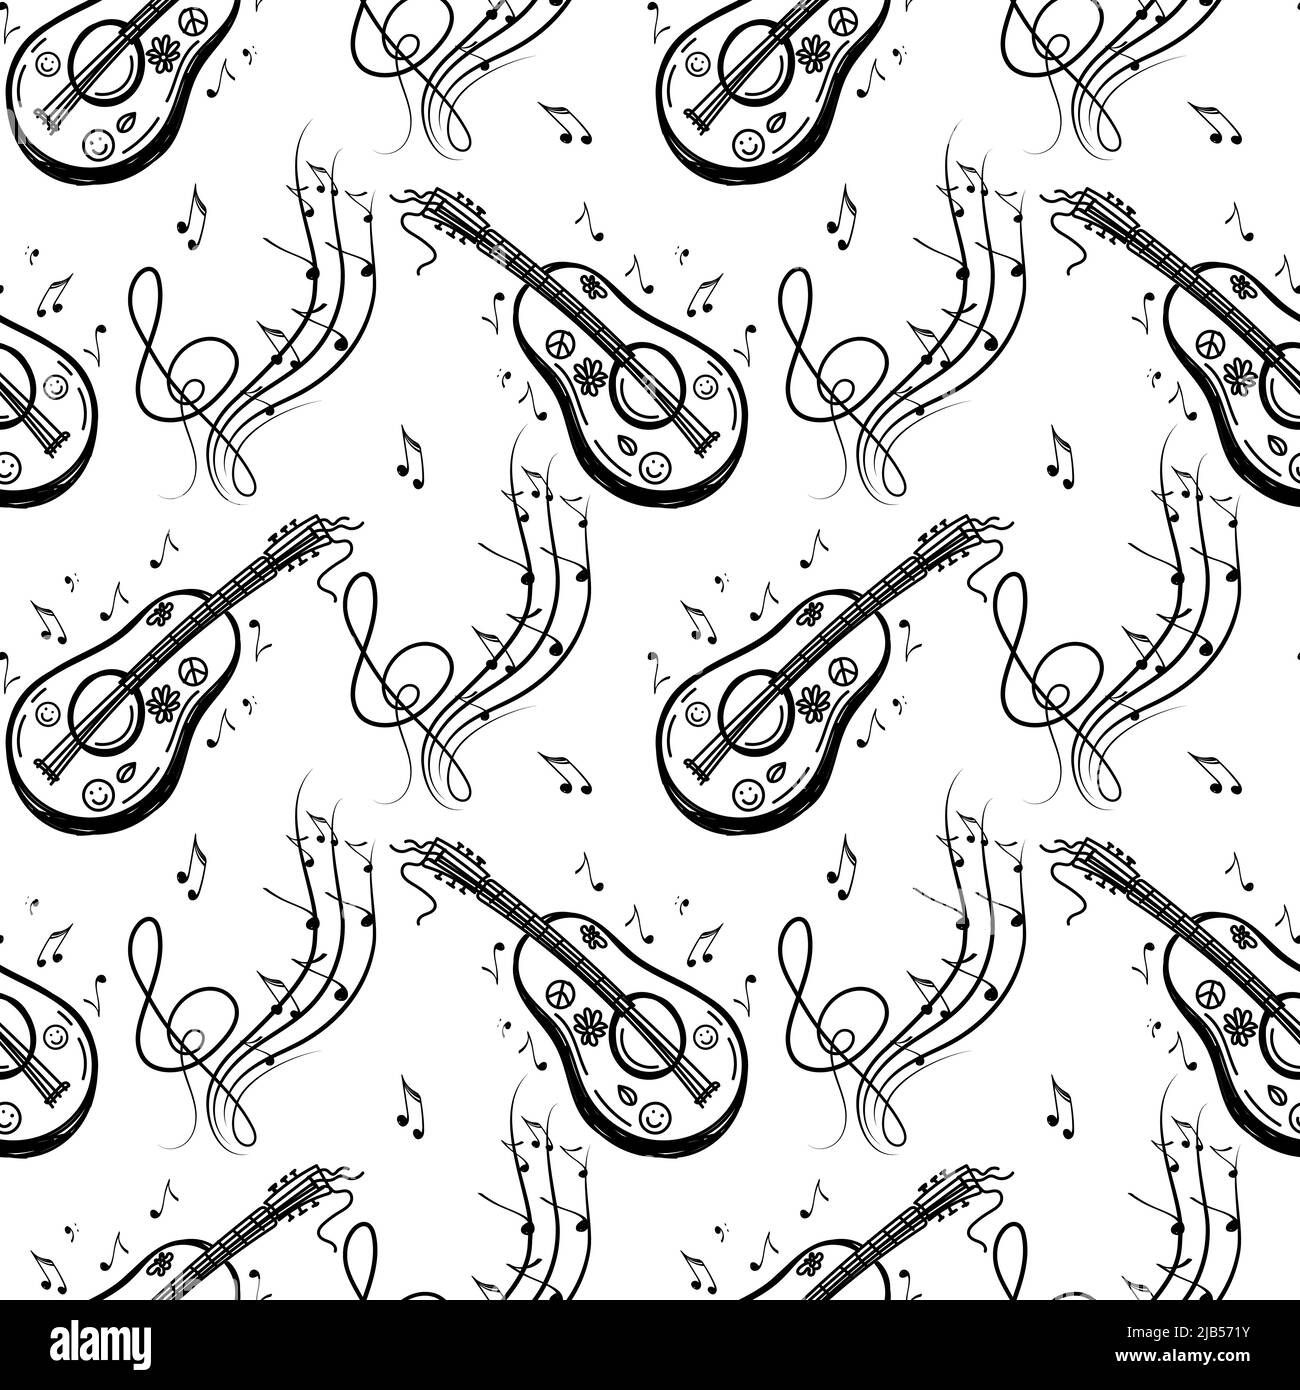 Ein nahtloses Muster aus musikalischen Symbolen, Gitarre, Ukulele, Noten, Geigenschlüsseln. Handgezeichnete Doodle-Stil-Elemente. Vektorgrafik Stock Vektor